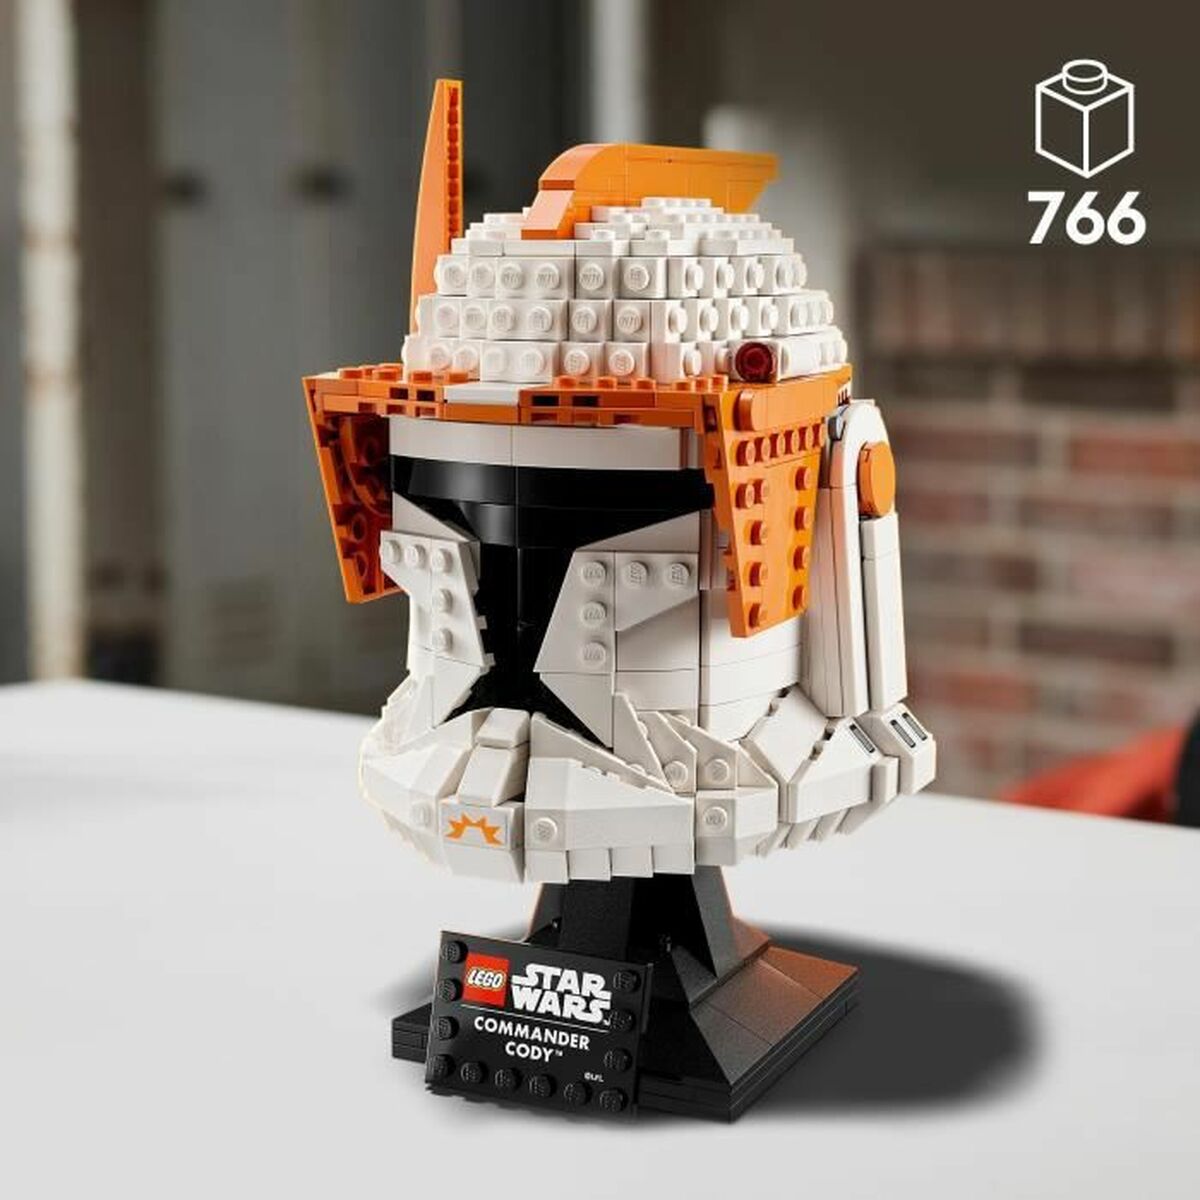 Строительный набор Lego Clone Commander Cody 766 Предметы